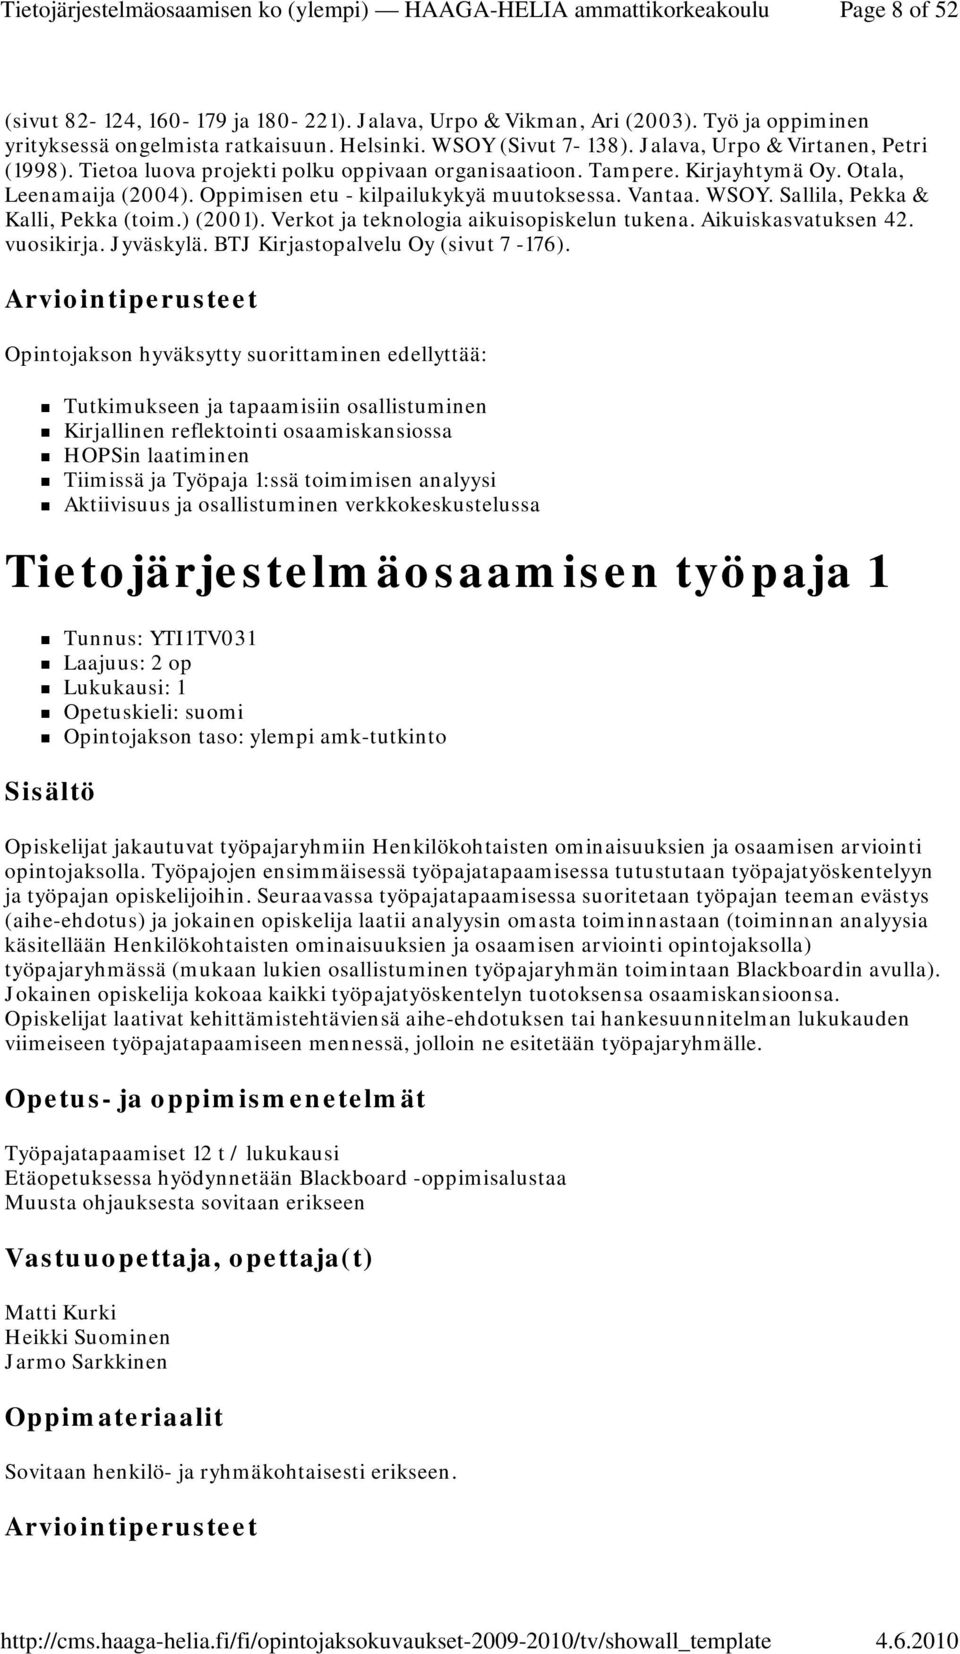 Sallila, Pekka & Kalli, Pekka (toim.) (2001). Verkot ja teknologia aikuisopiskelun tukena. Aikuiskasvatuksen 42. vuosikirja. Jyväskylä. BTJ Kirjastopalvelu Oy (sivut 7-176).